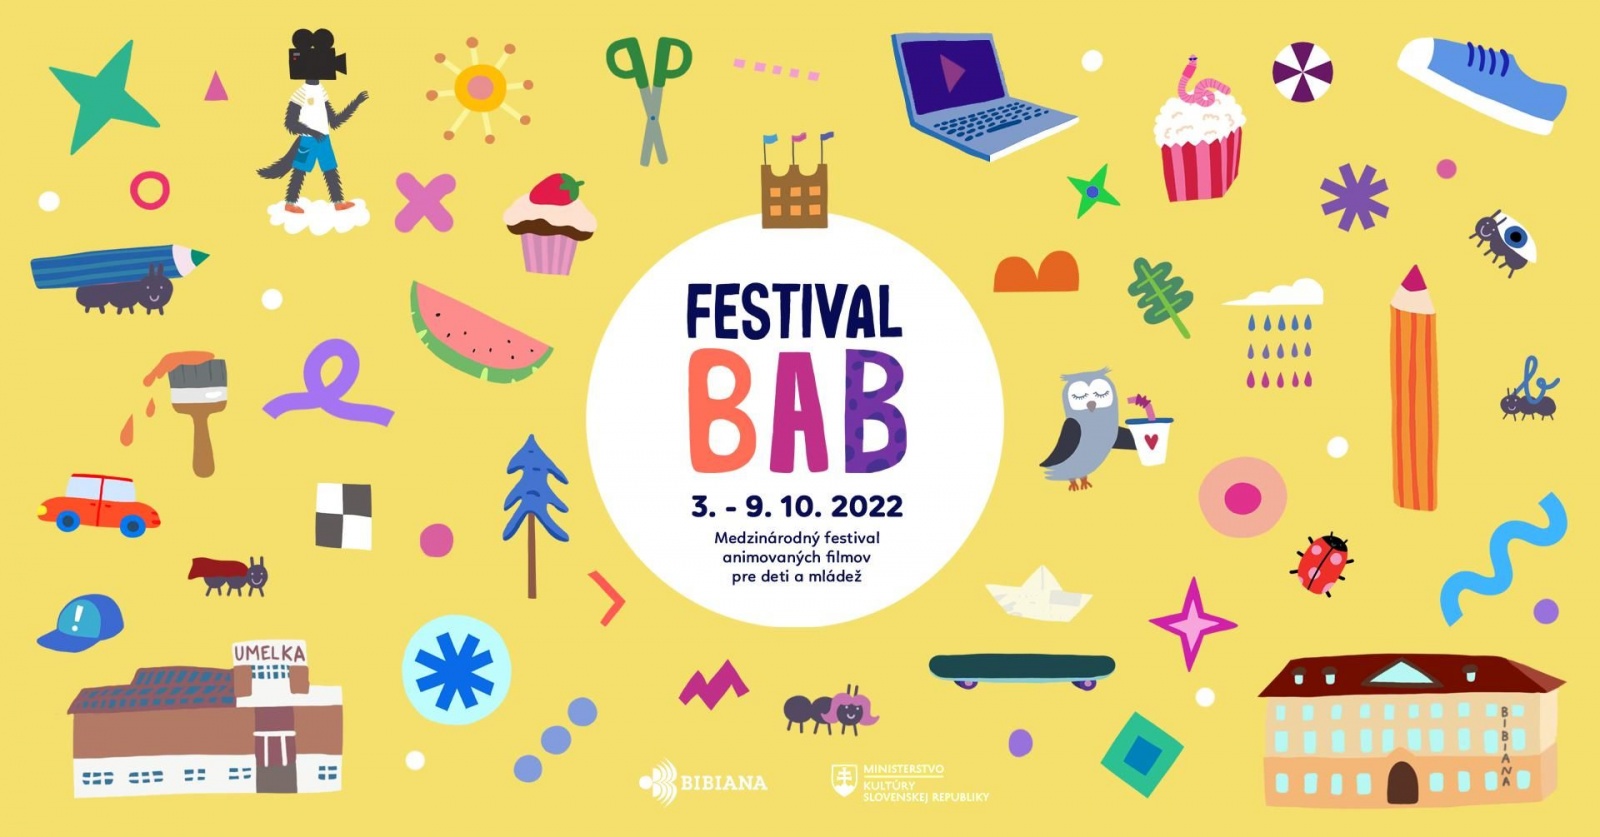 Festival BAB 2022